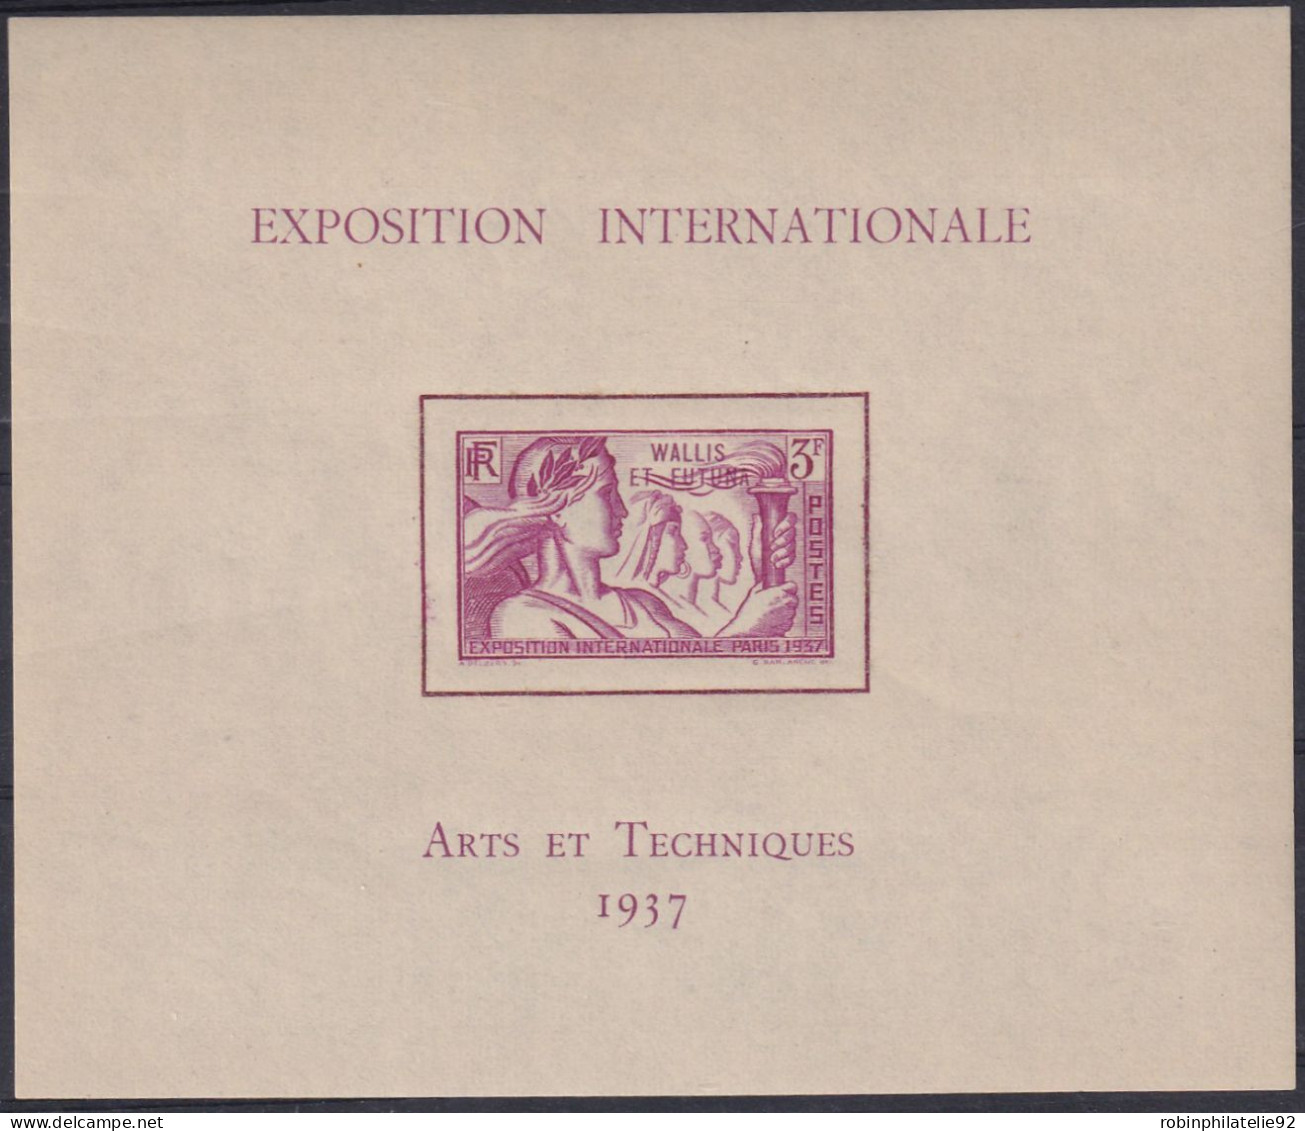 Séries Coloniales1937 Exposition Internationale De Paris 24 Blocs Qualité:** Cote:632 - 1937 Exposition Internationale De Paris